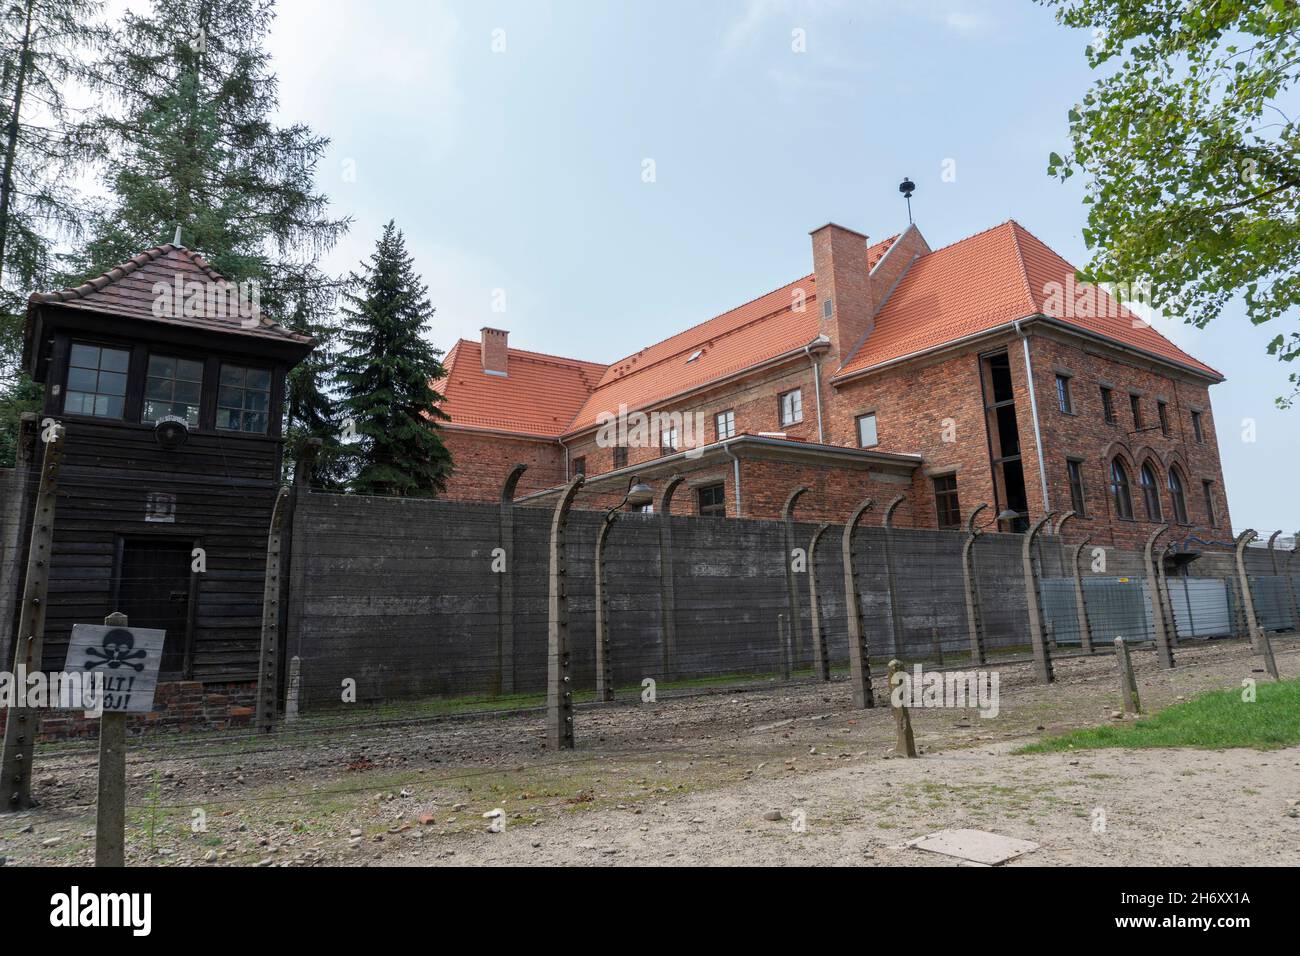 Pologne, petite Pologne, village d'Oswiecim, Auschwitz Birkenau, camp allemand de concentration et d'extermination nazi (1940-1945) Banque D'Images